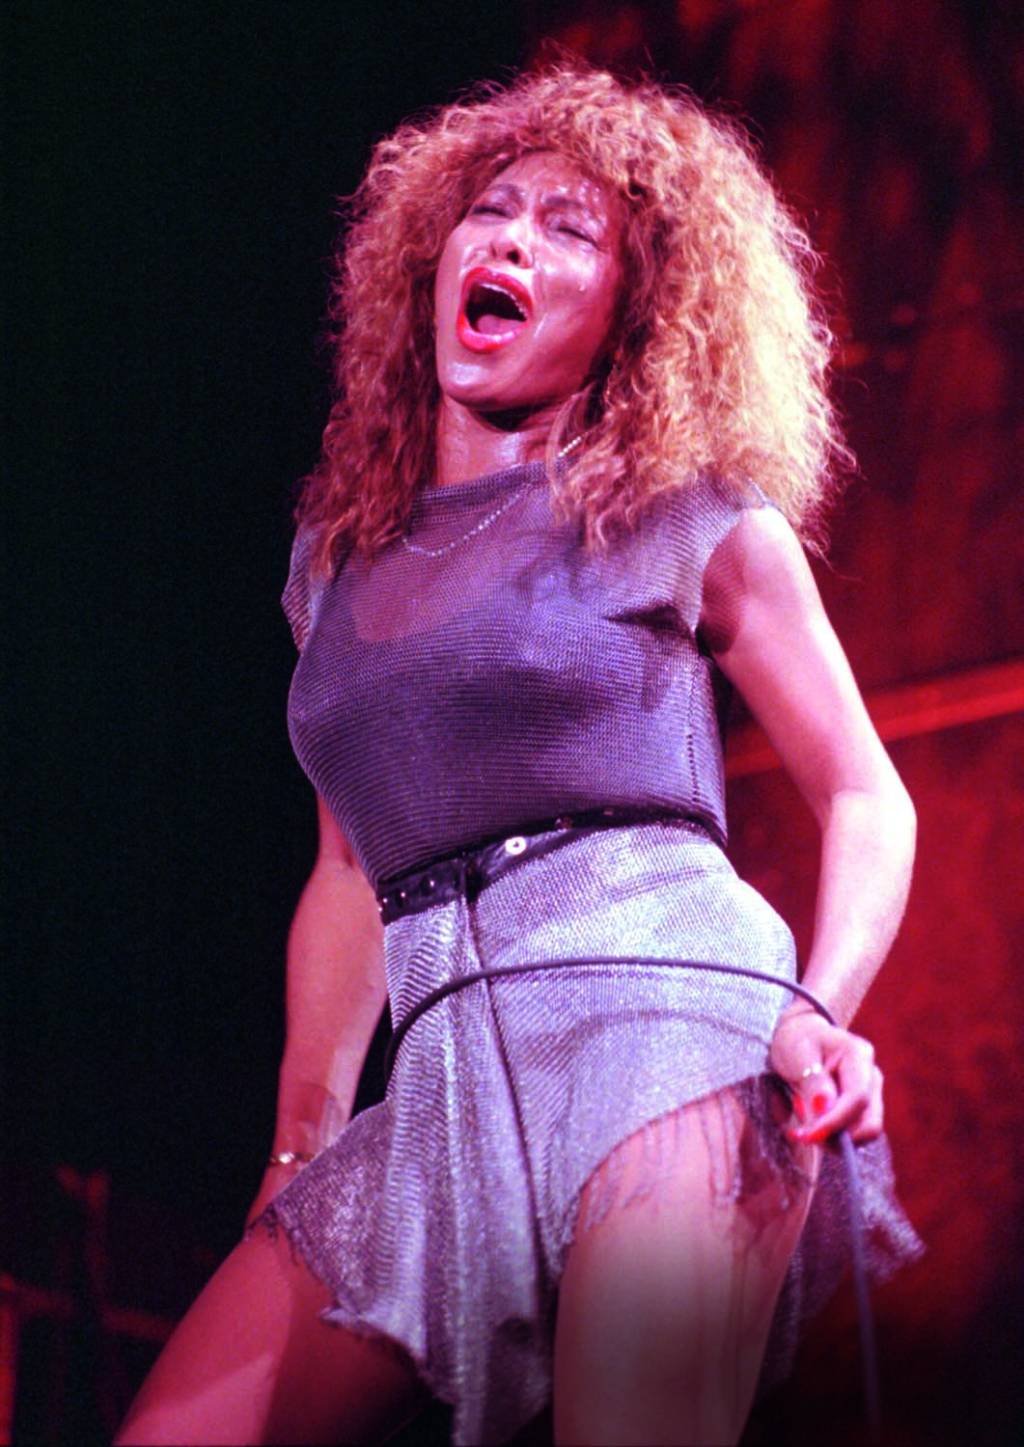 Imagem mostra mulher em palco, com roupa brilhante e a boca aberta